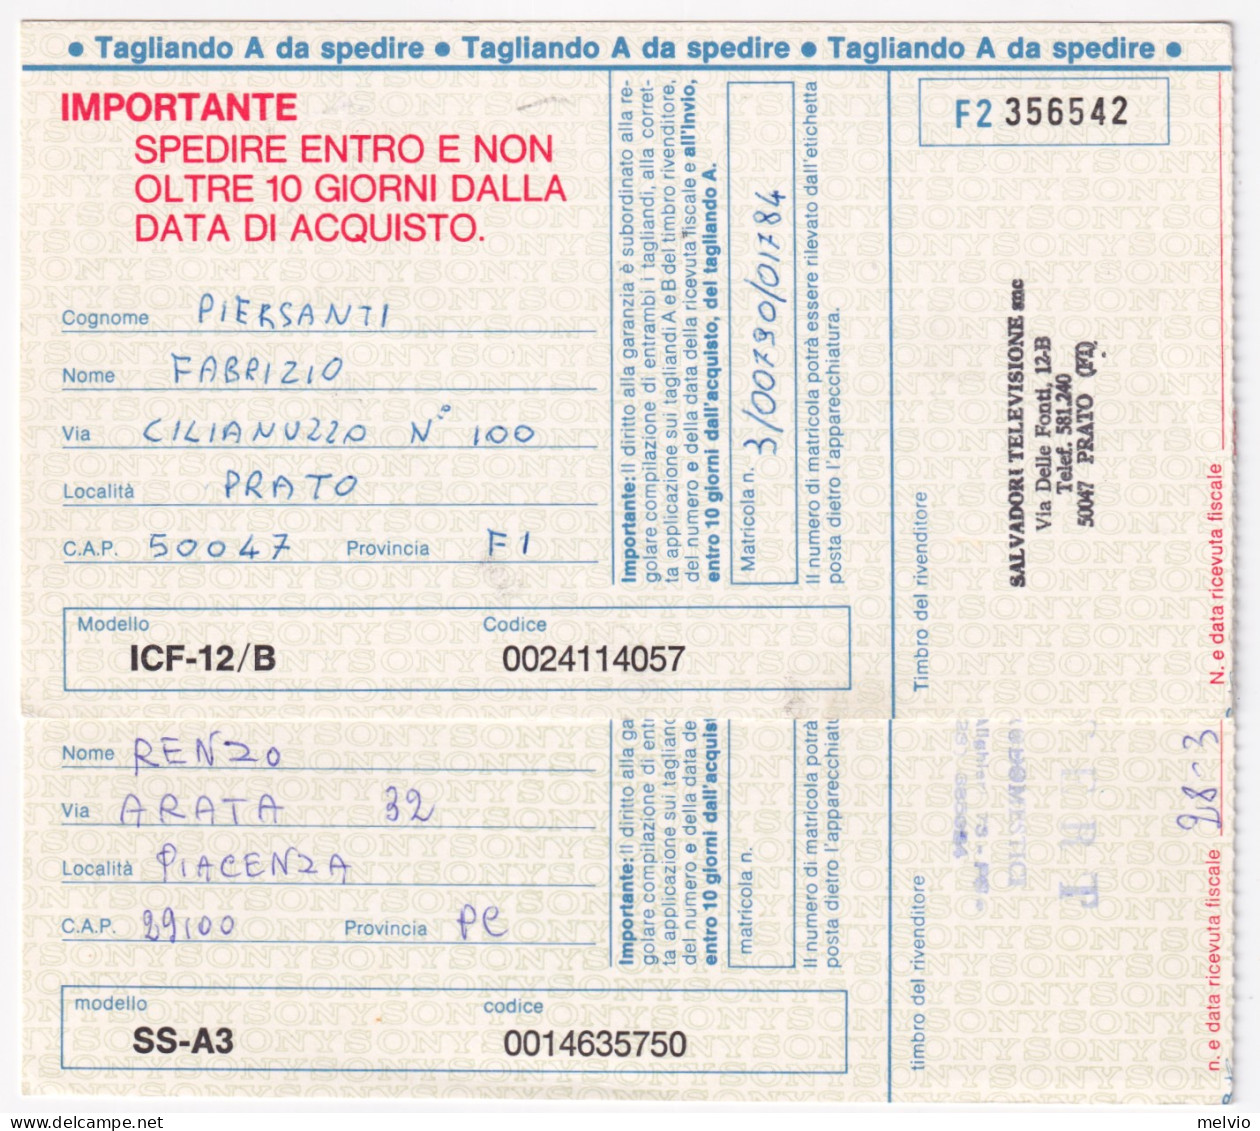 1988-CORPI POLIZIA I Due Valori (1764/5) Isolato Su 2 Cartoline (fuori Misura) - 1981-90: Poststempel